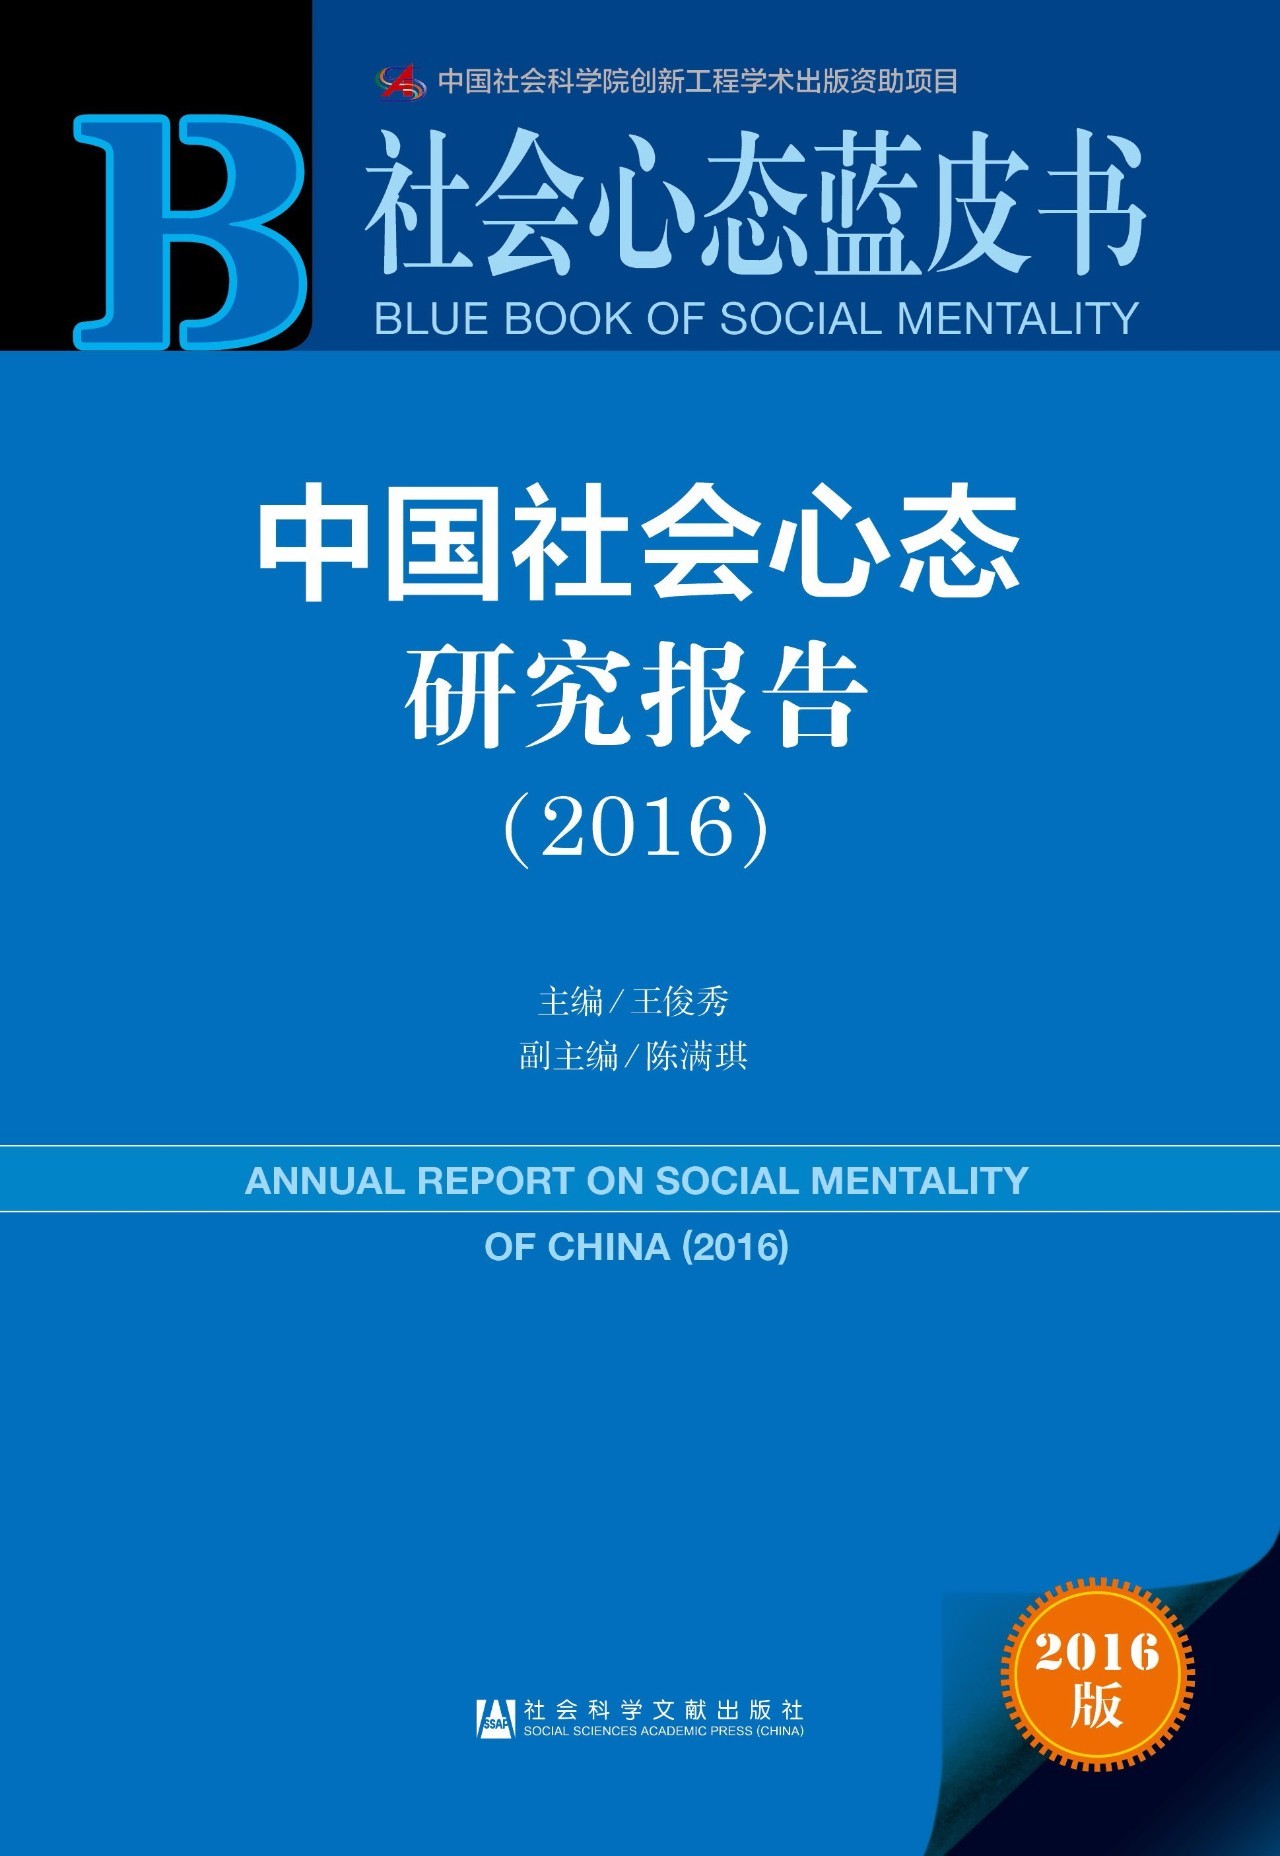 《社会心态蓝皮书》| 2015年至2016年十大微博